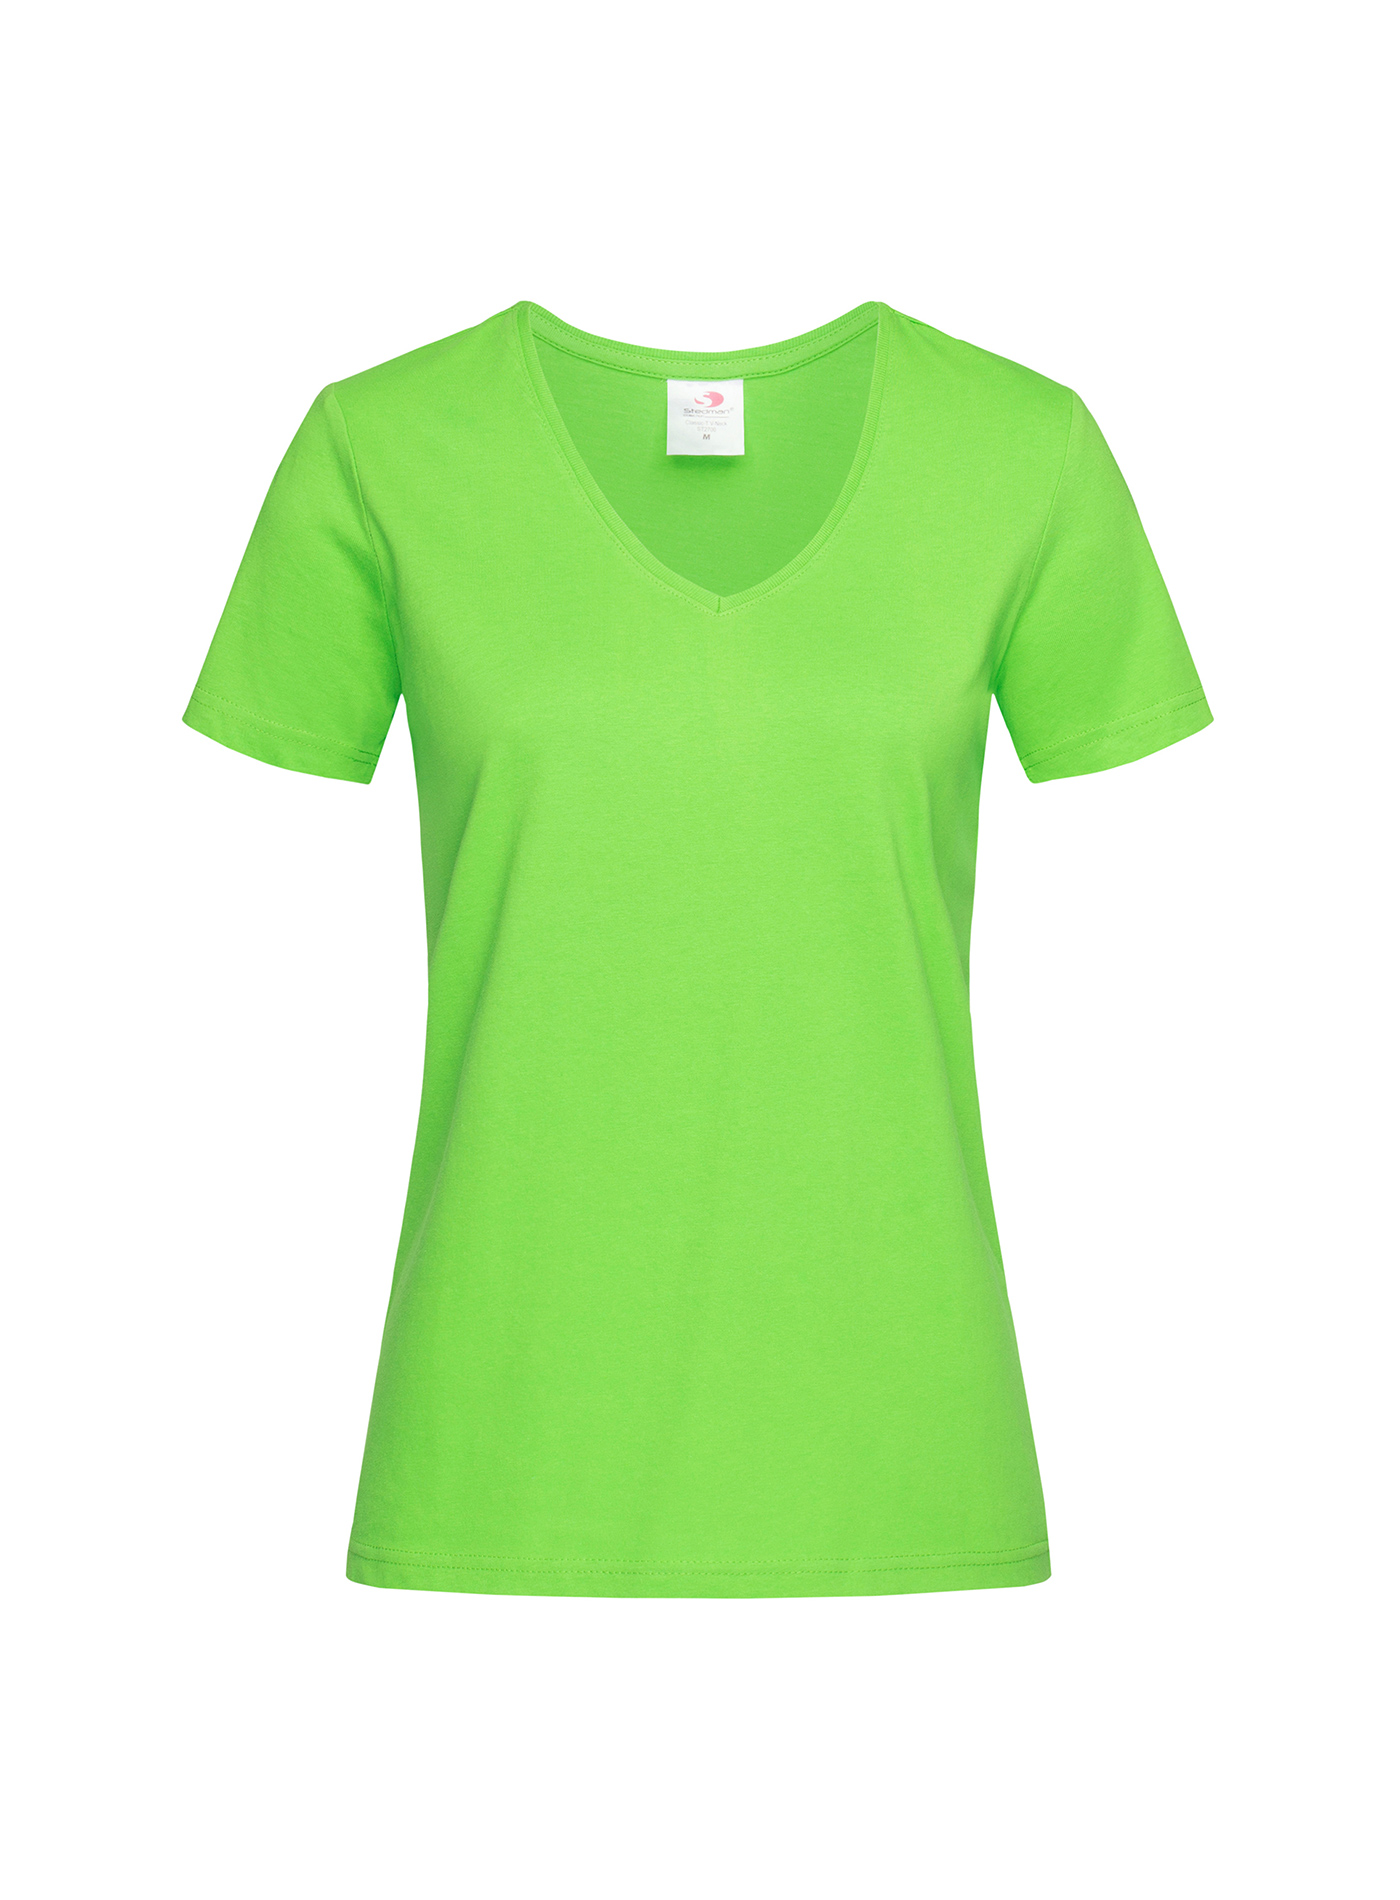 Dámské tričko s V-výstřihem Stedman - Neonová zelená XL